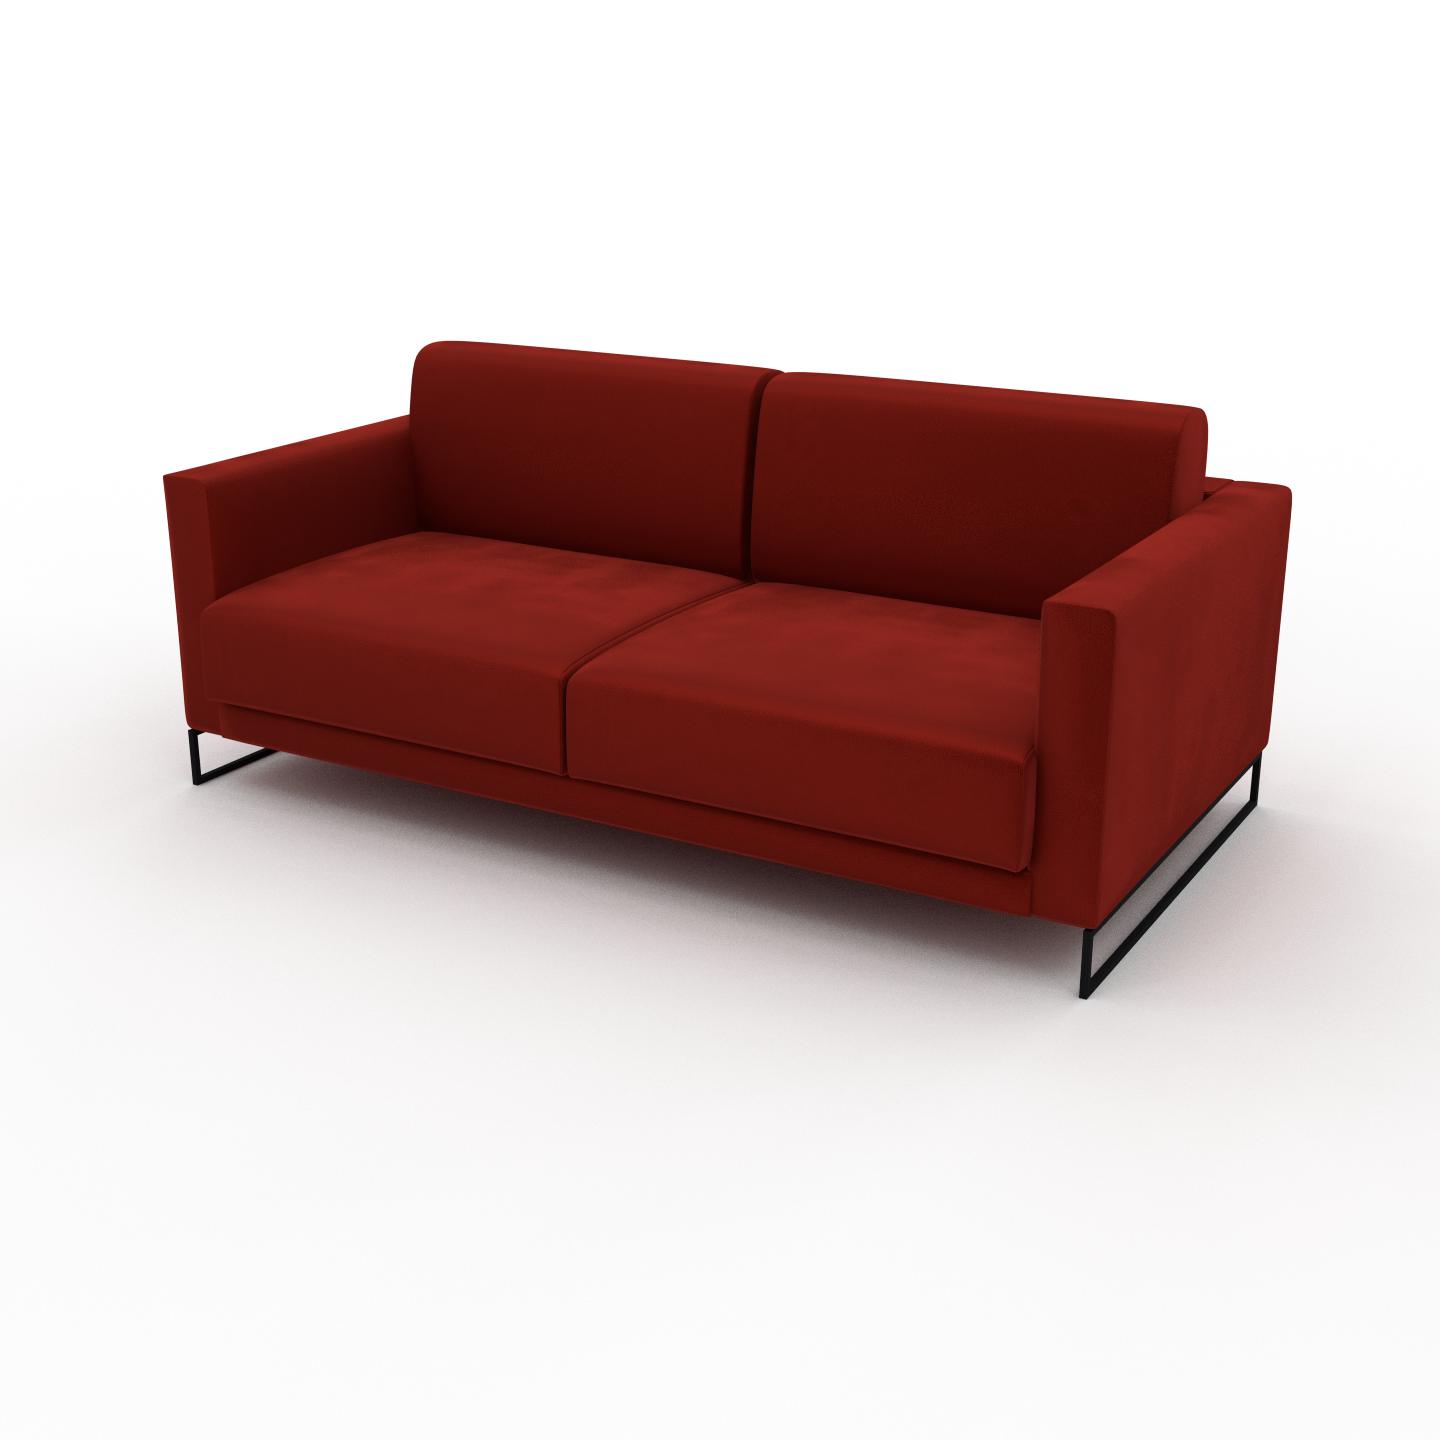 MYCS Sofa 2-Sitzer Samt Rostorange Samt - Elegantes, gemütliches 2-Sitzer Sofa: Hochwertige Qualität, einzigartiges Design - 184 x 75 x 98 cm,...